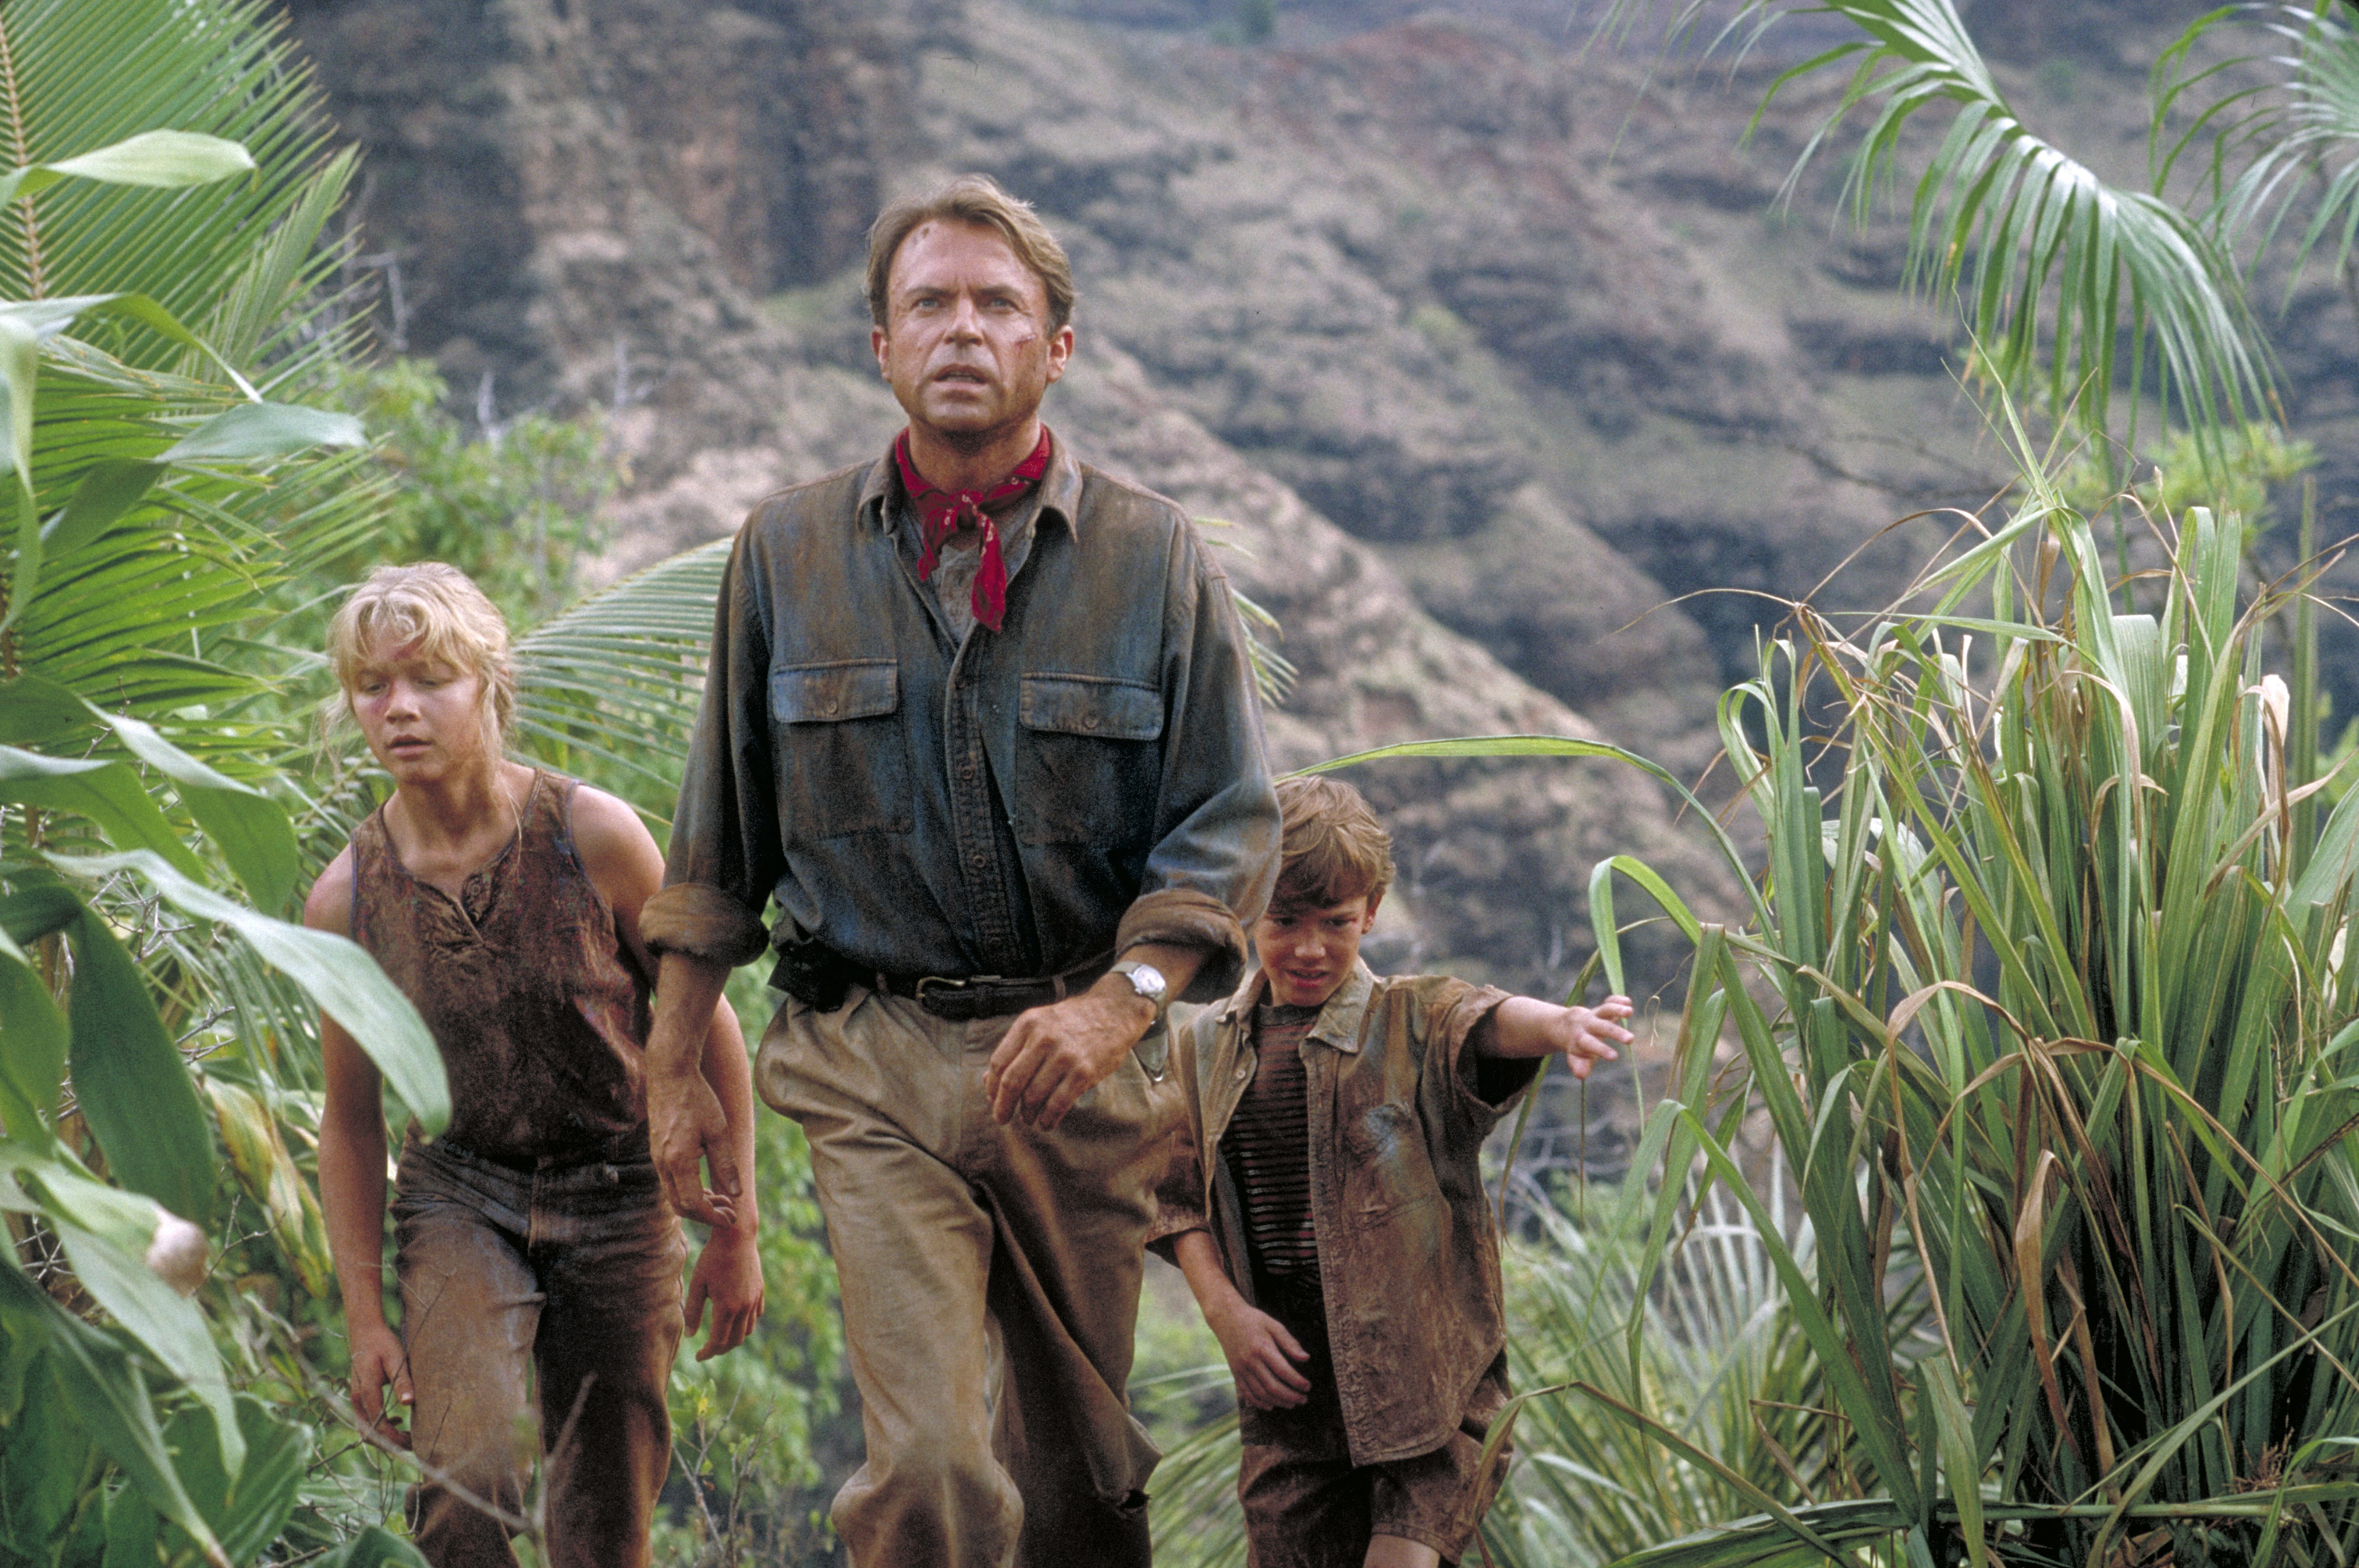 Ariana Richards, Sam Neill et Joseph Mazzello sur le plateau de tournage de "Jurassic Park", en 1993. | Source : Getty Images